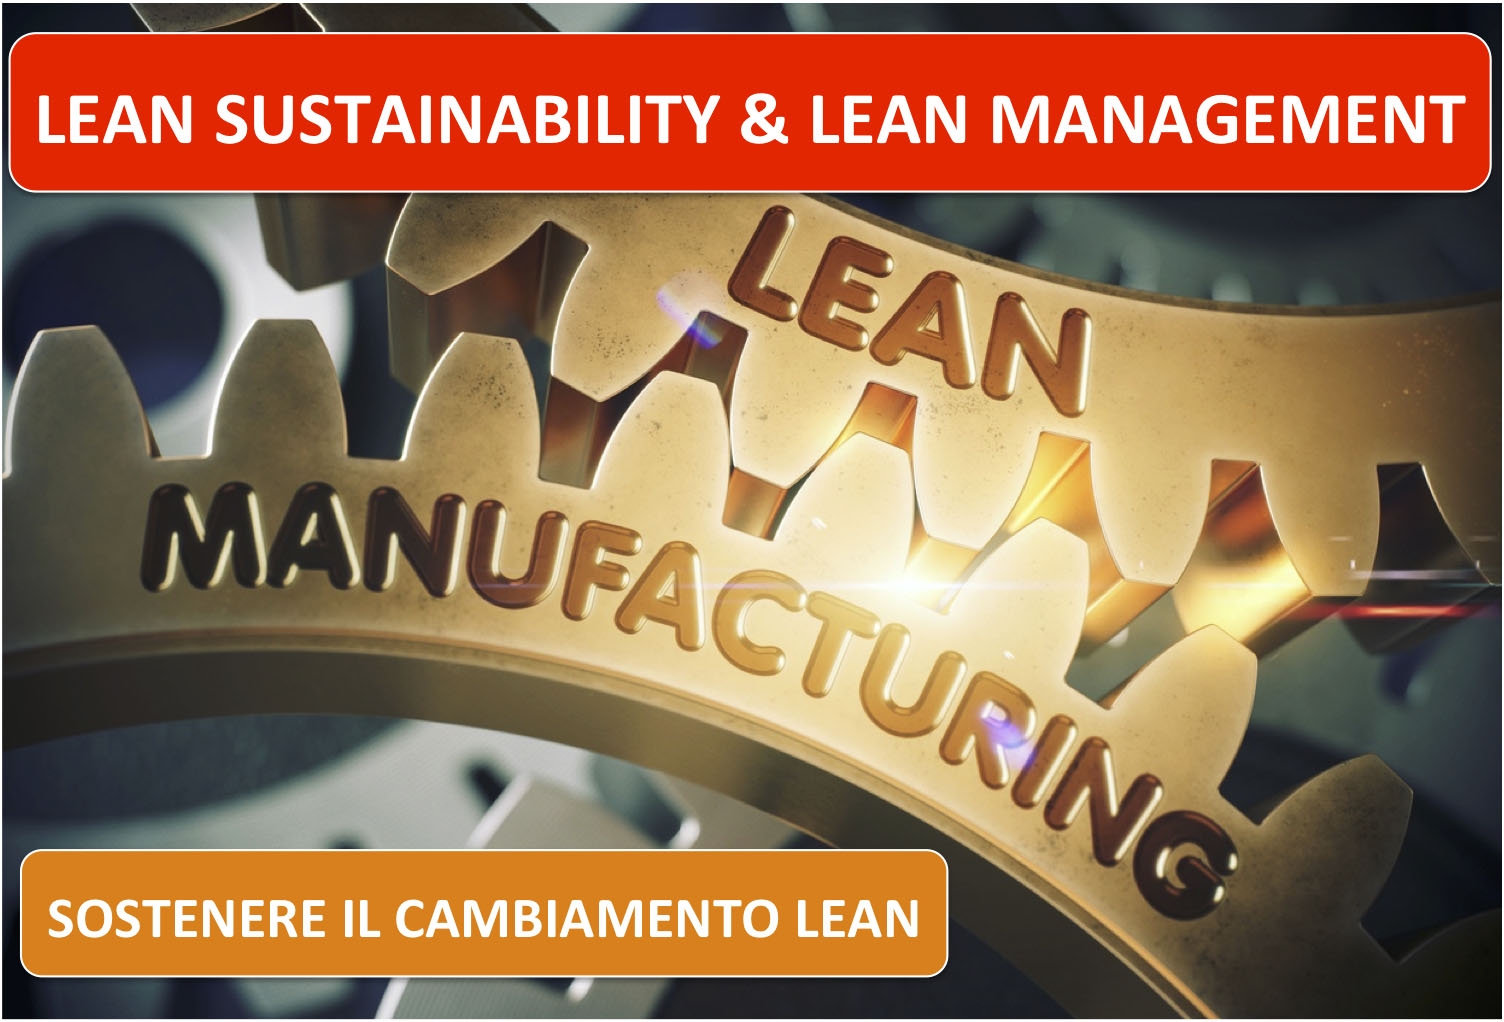 lean-sustainability-lean-management Lean Sustainability & Lean Management - Blog Kaizen